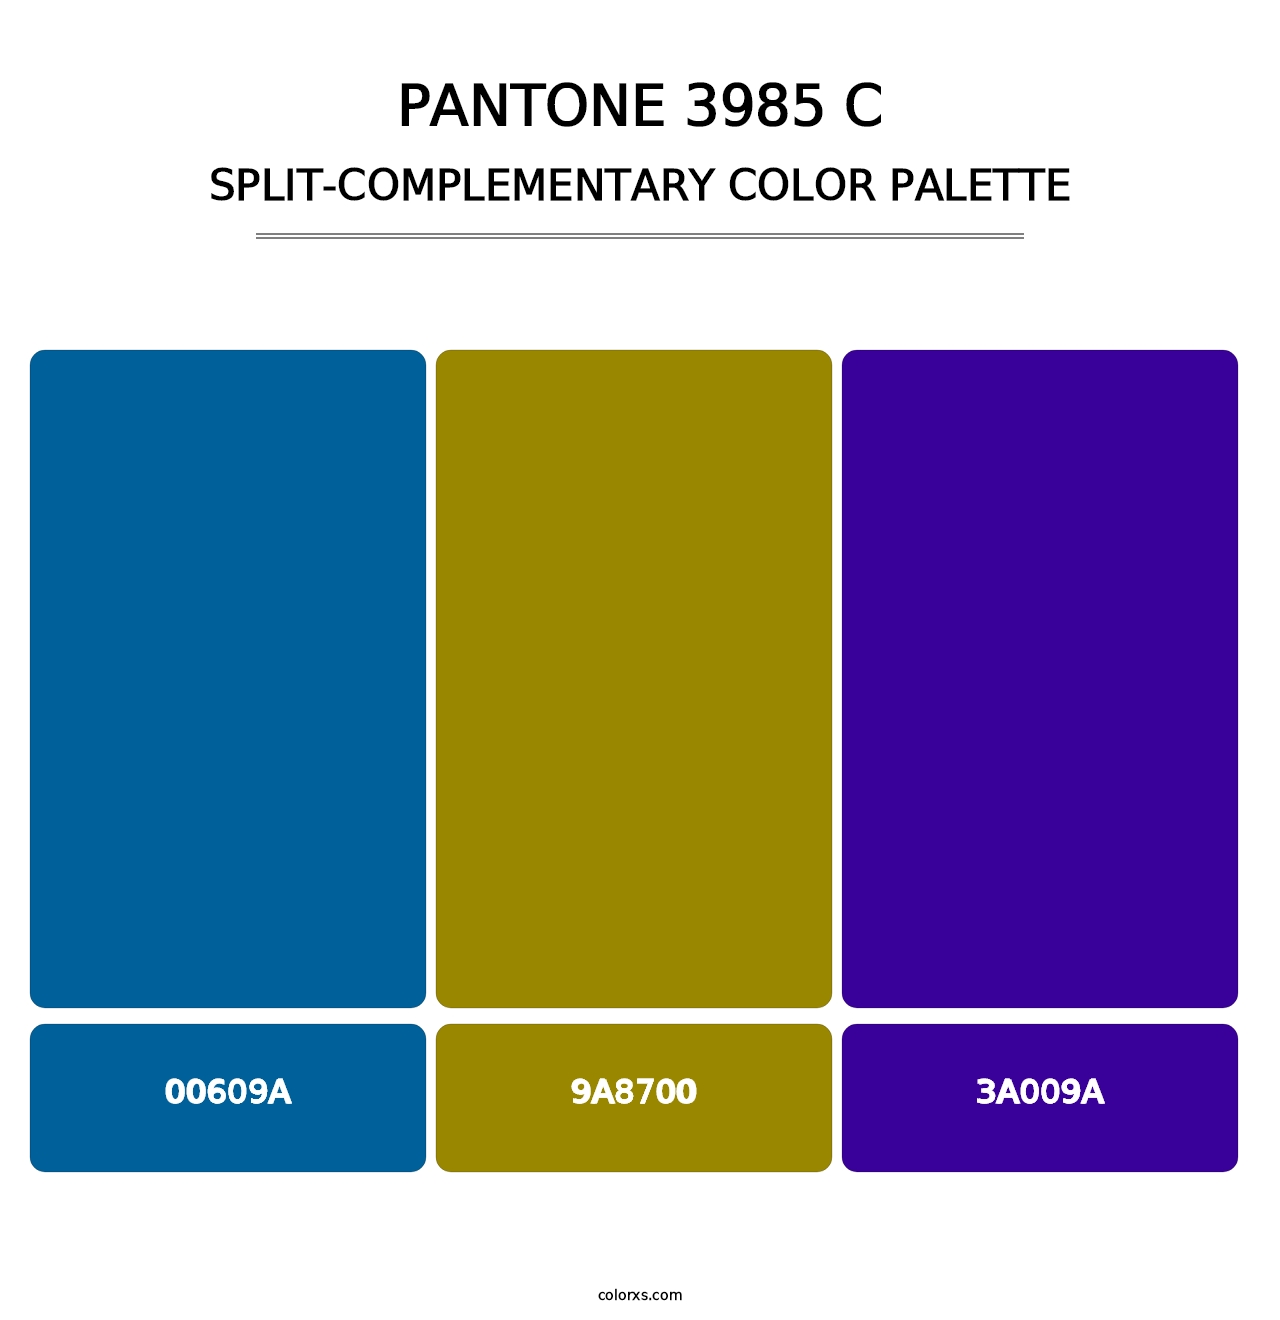 PANTONE 3985 C - Split-Complementary Color Palette